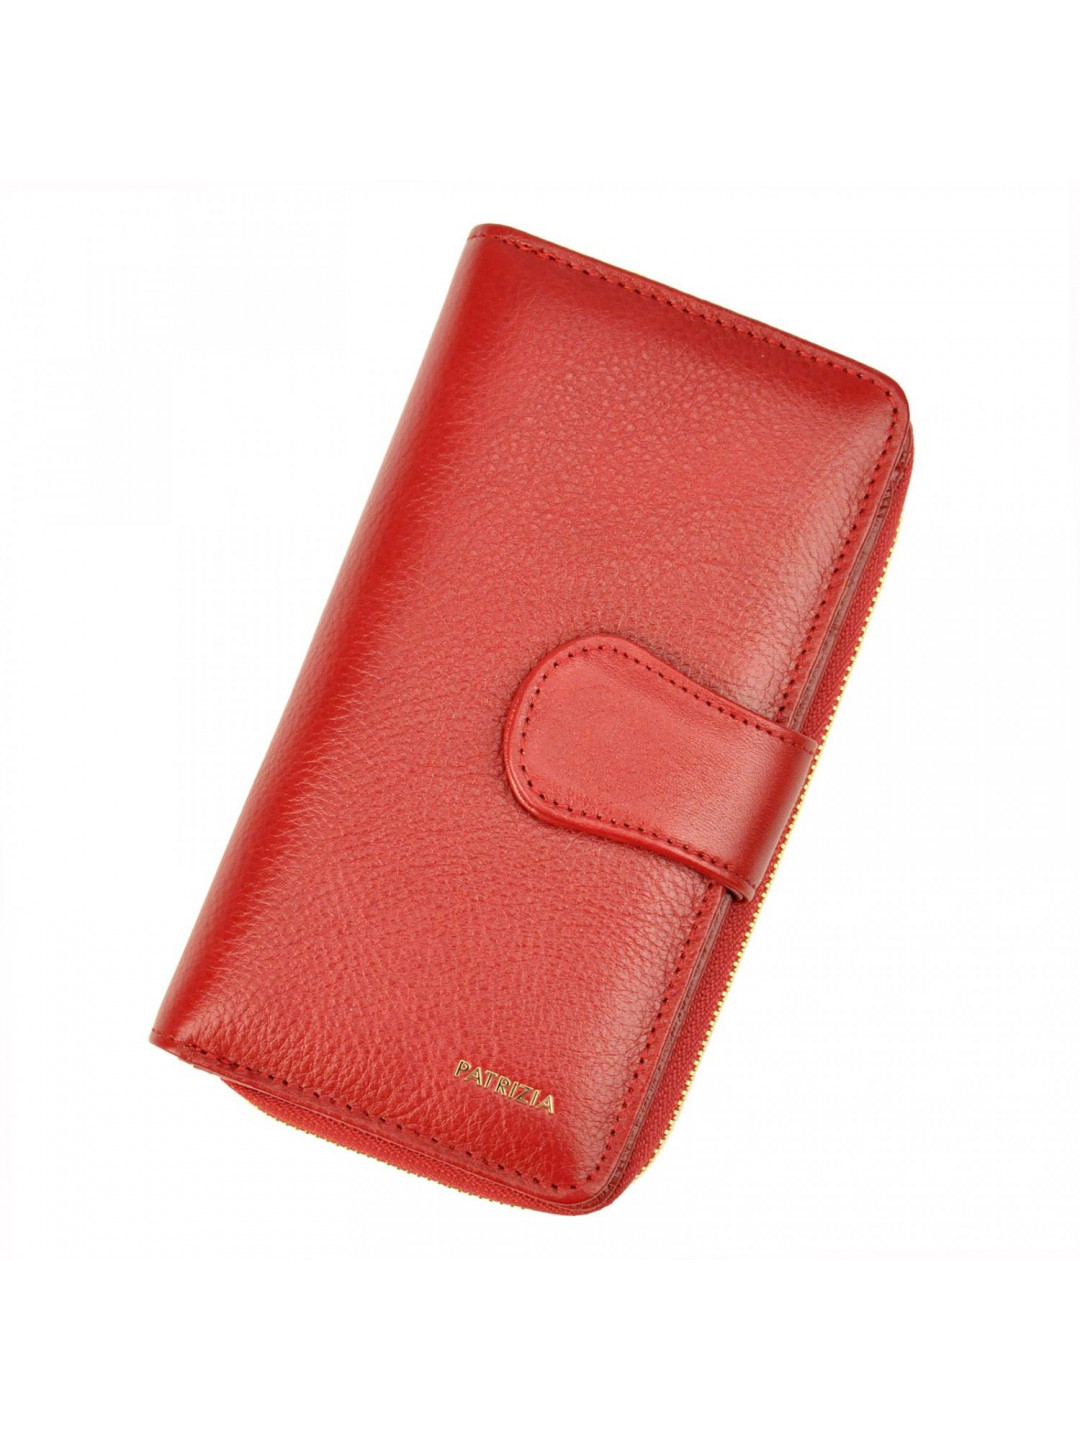 Stylová dámská kožená peněženka Bave červená